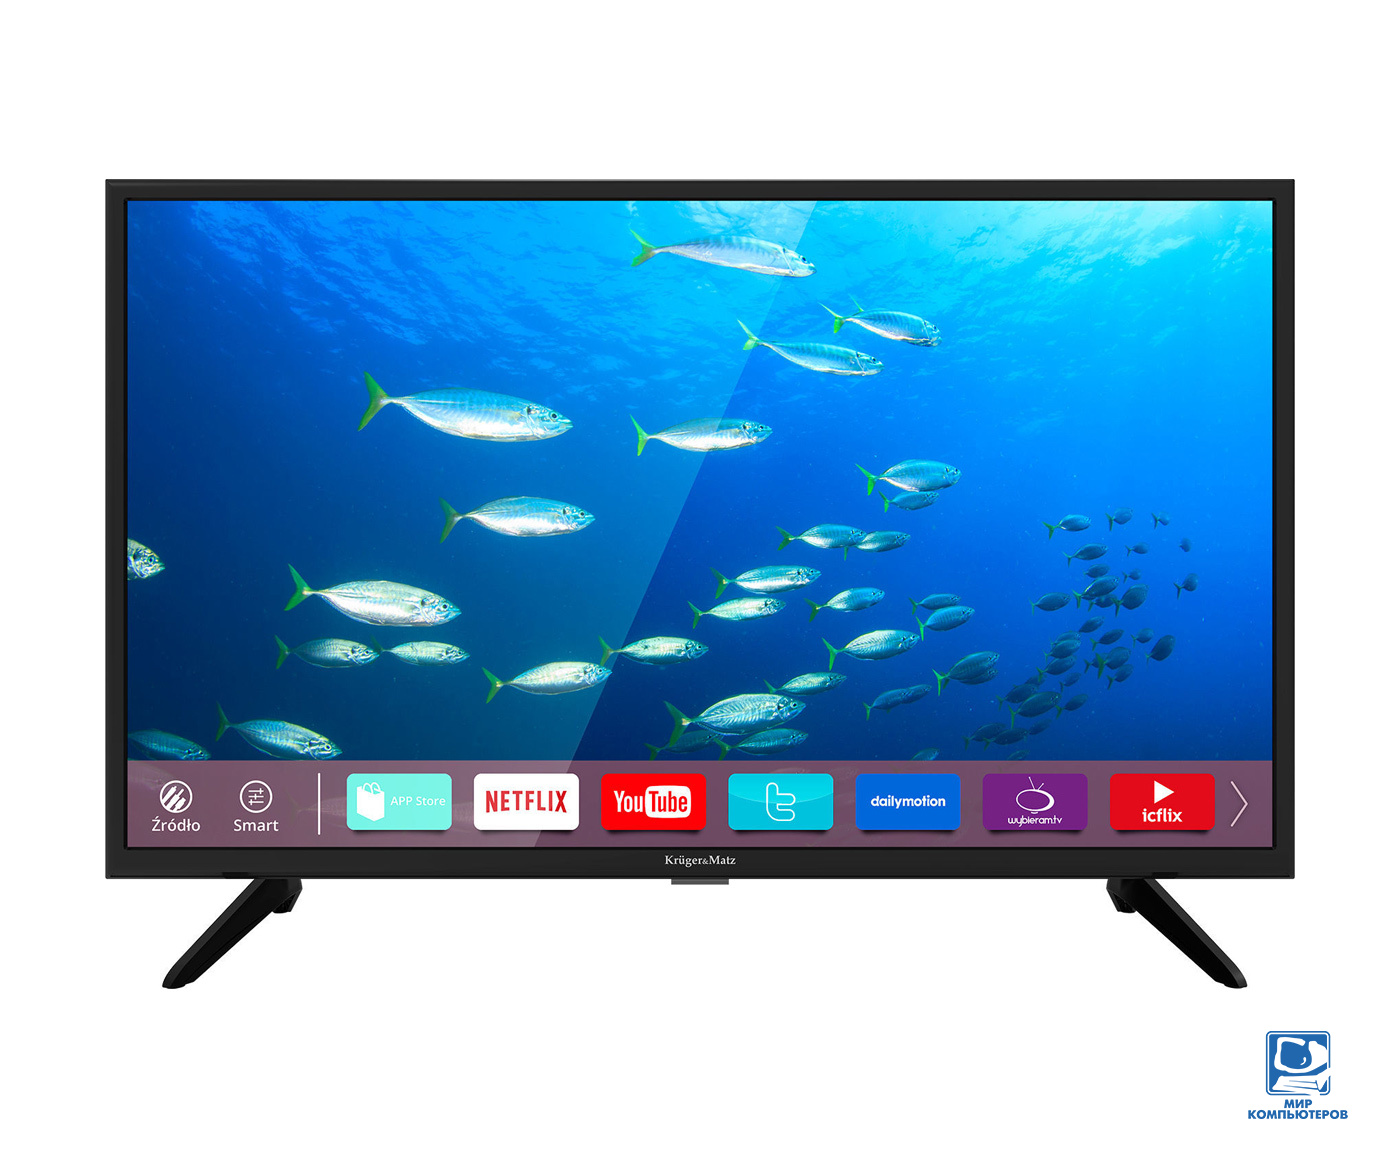 Телевизор 32" Kruger&Matz (VA/1366x768/Smart TV/DVB-C, DVB-T2, DVB-S2/2х5W) KM0232-S Black